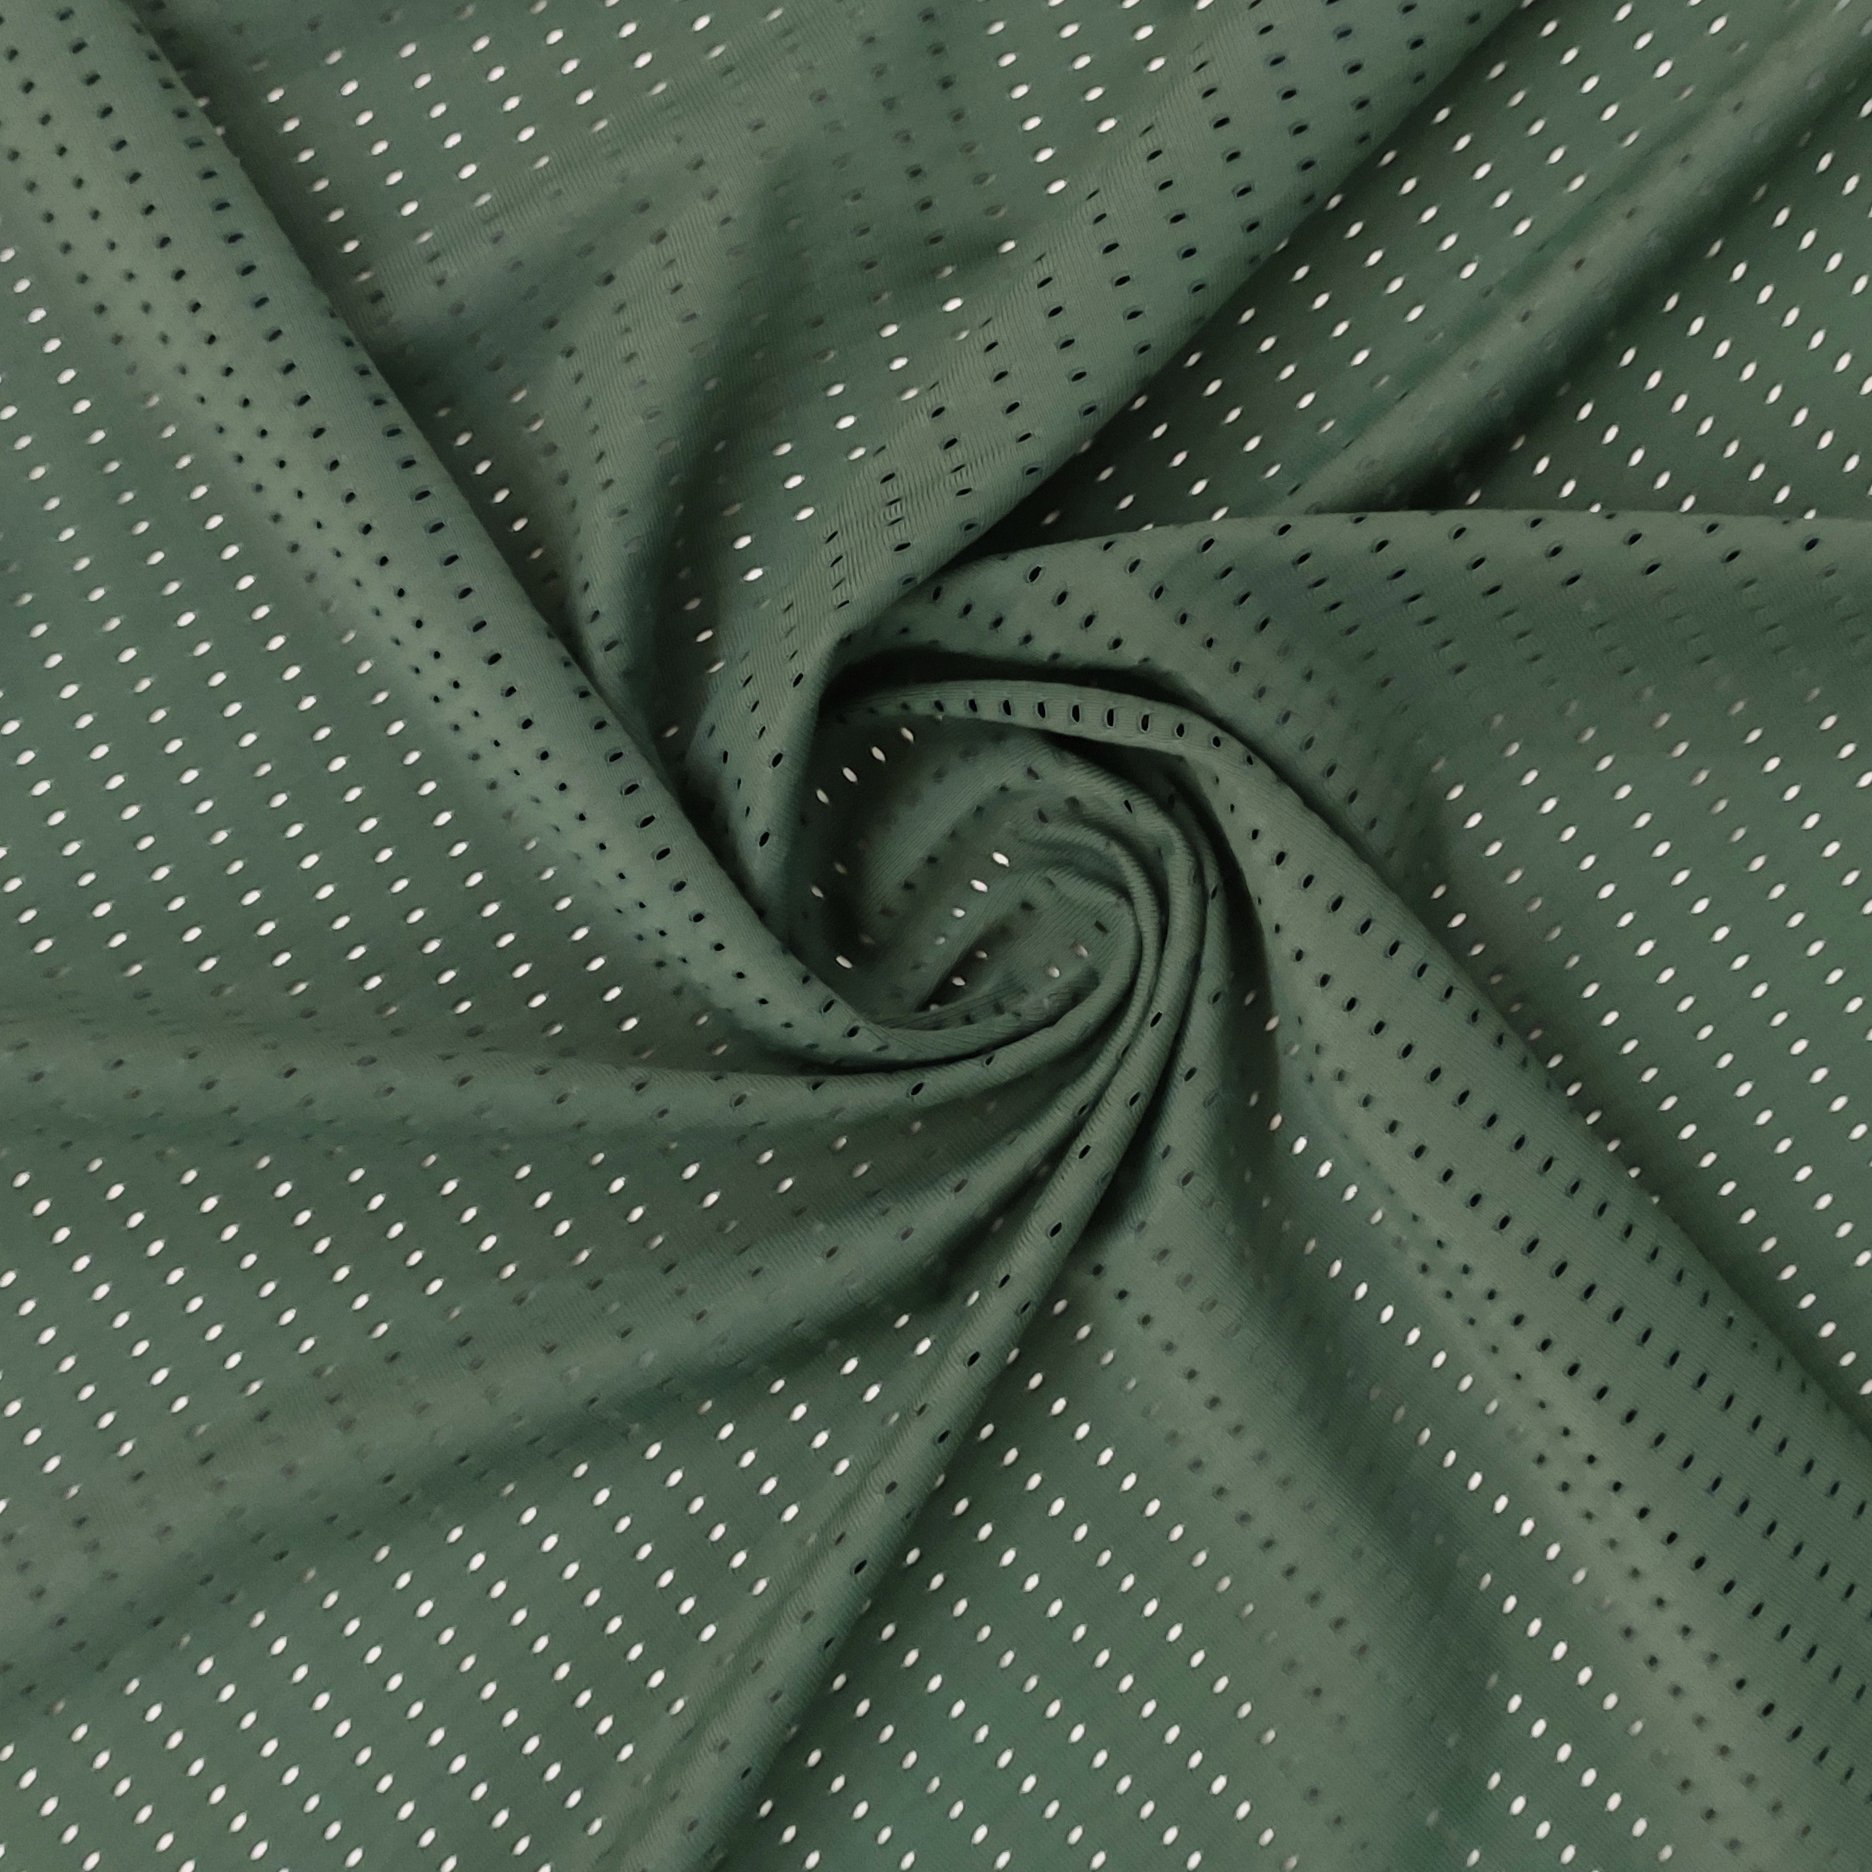 mosquito mesh fabric